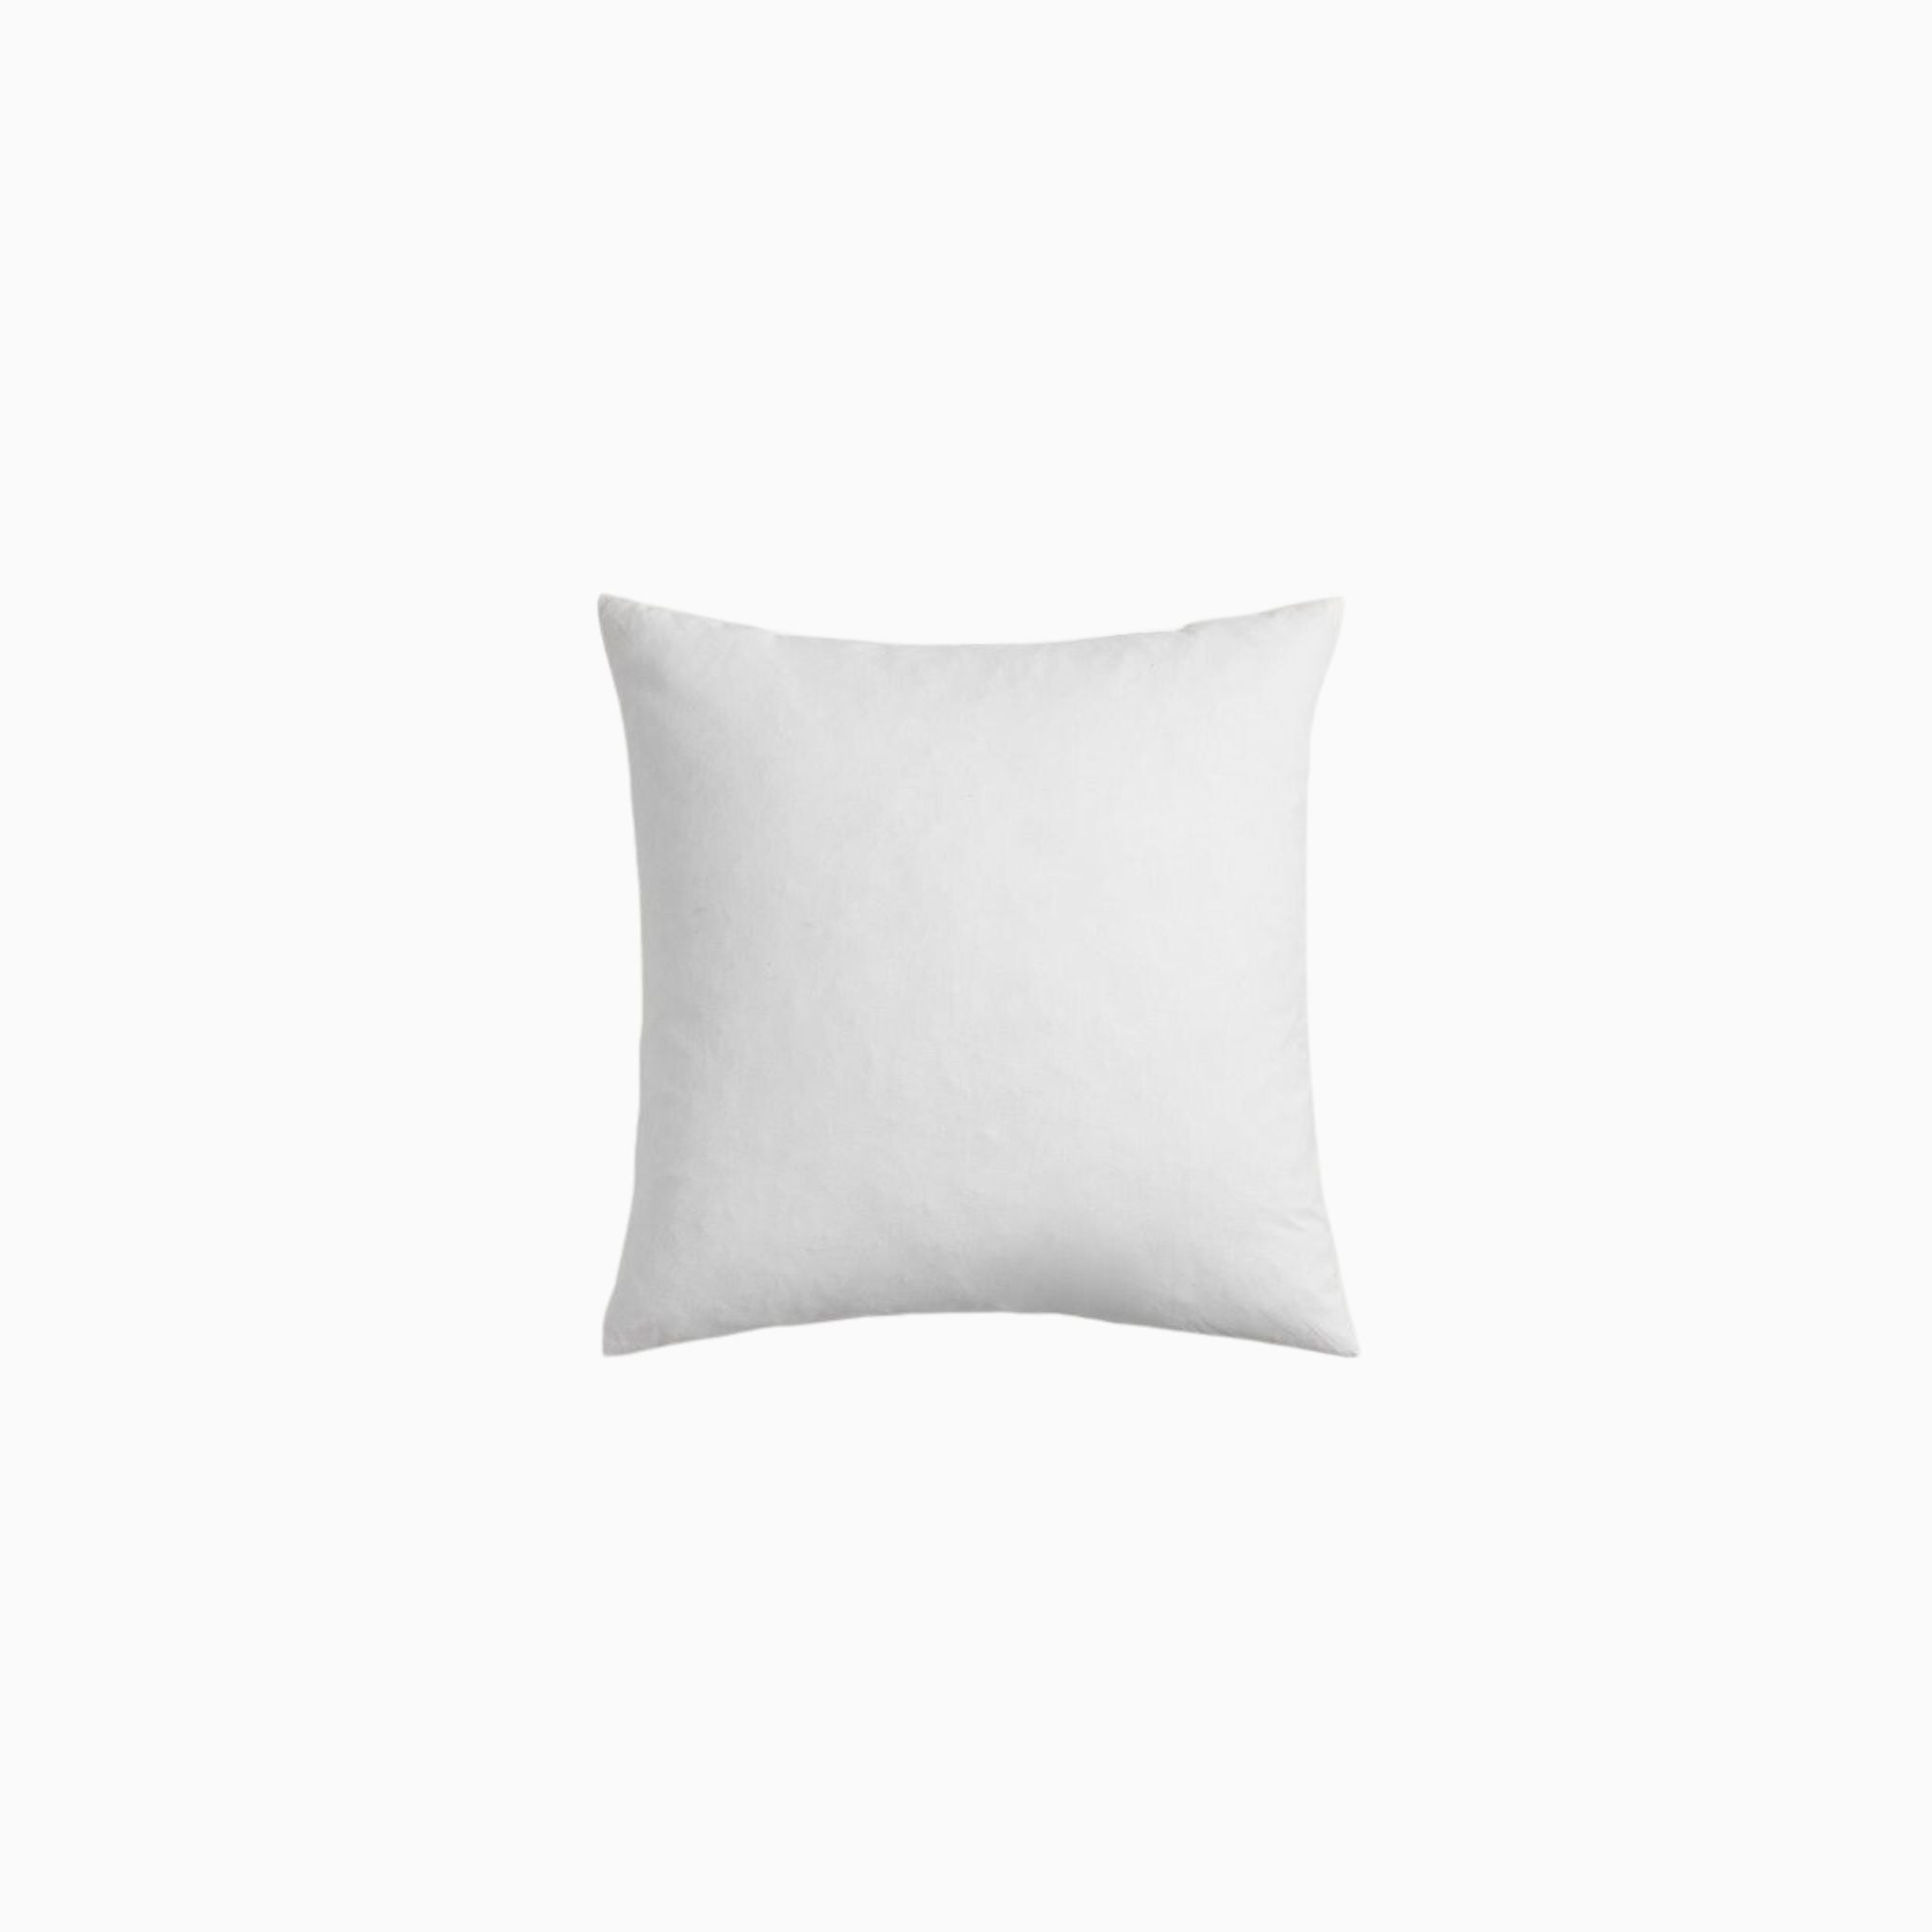 Pillow Insert 22x22